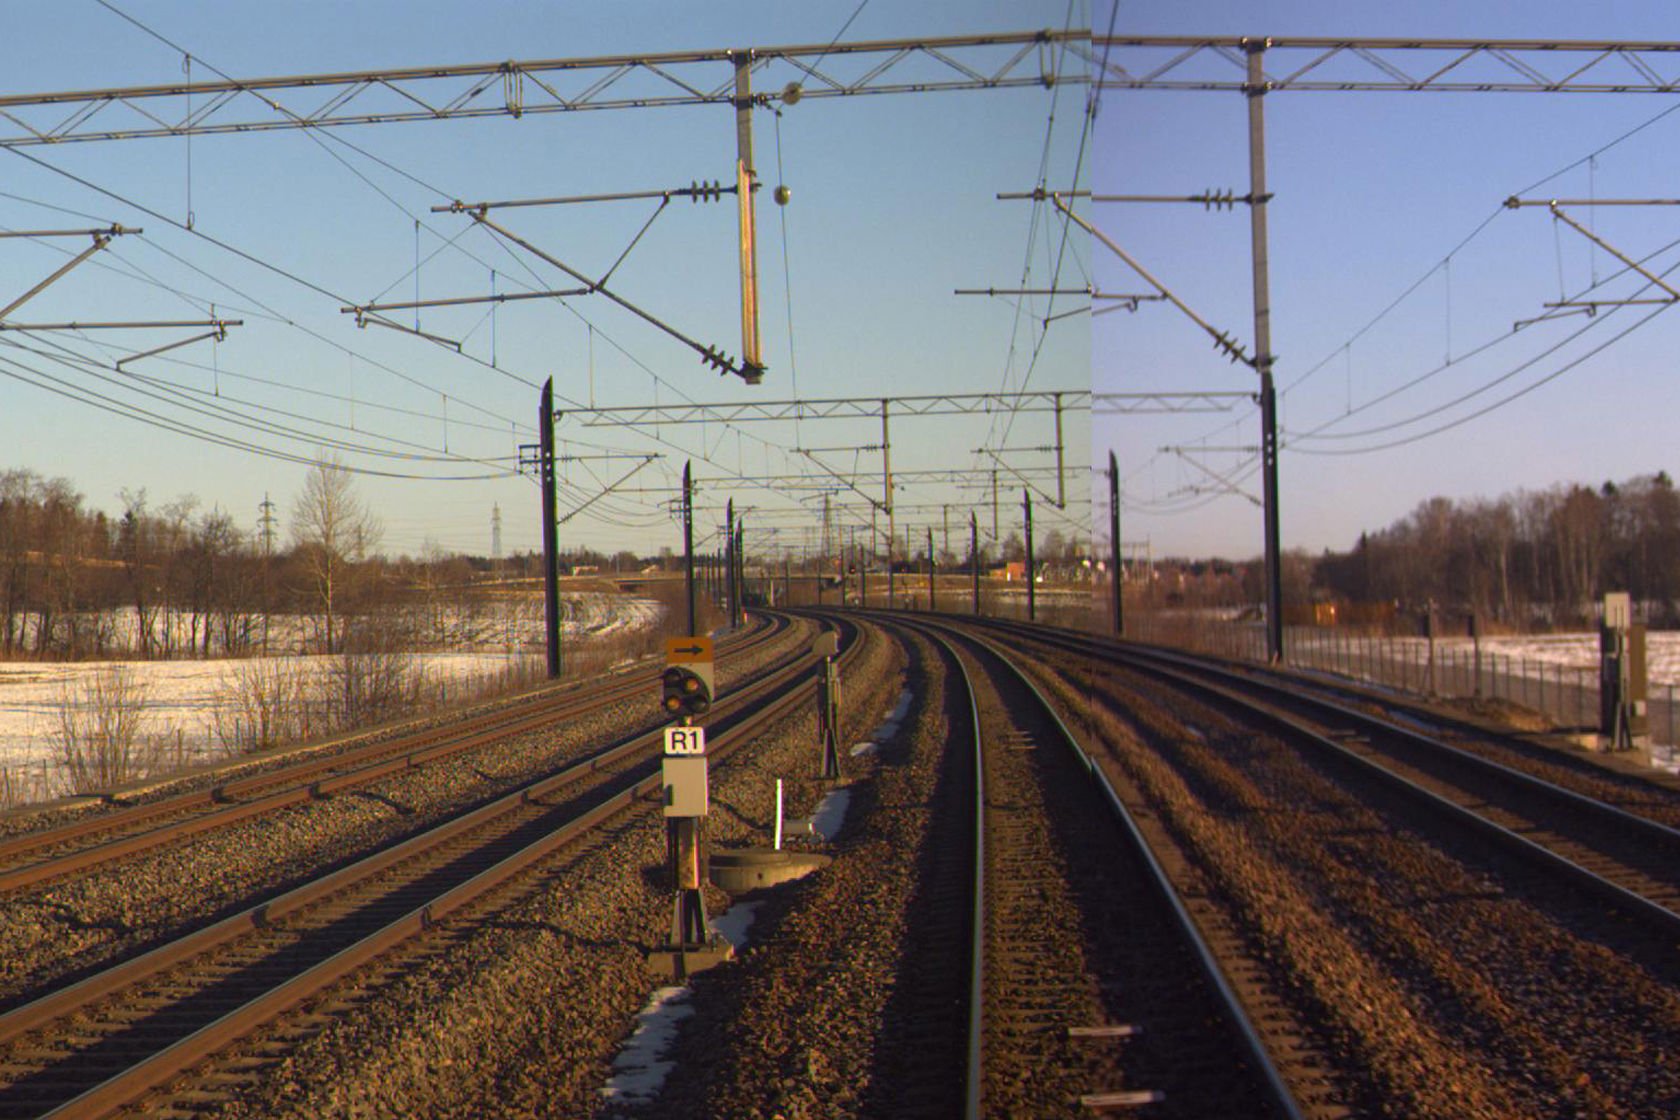 Tracks at Lillestrøm N station